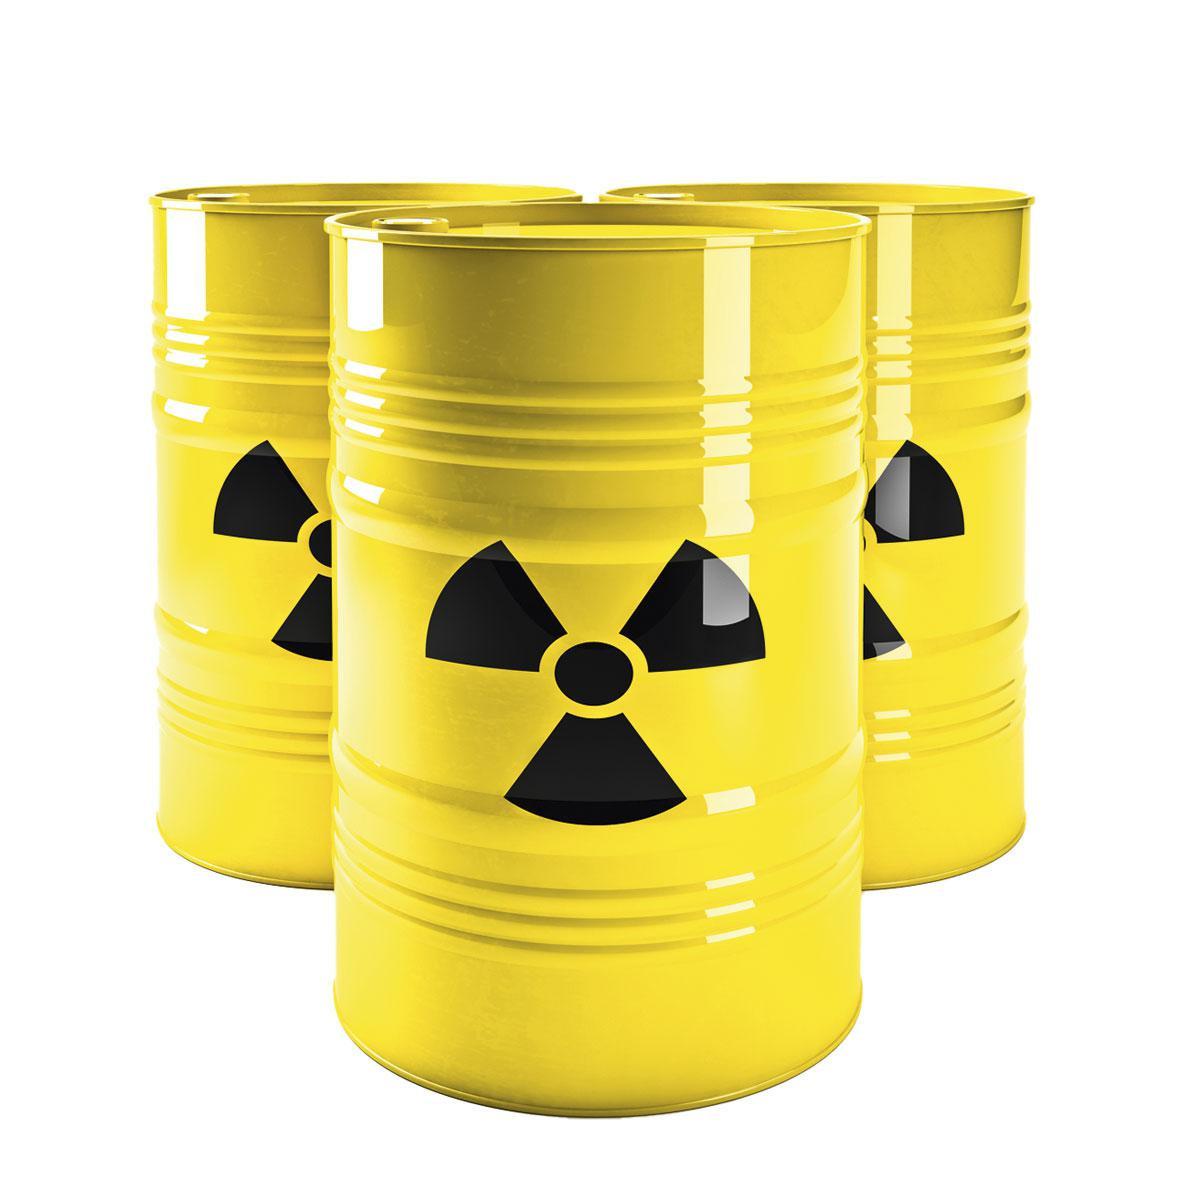 Kernenergie: is er nog een rol weggelegd voor kerncentrales?